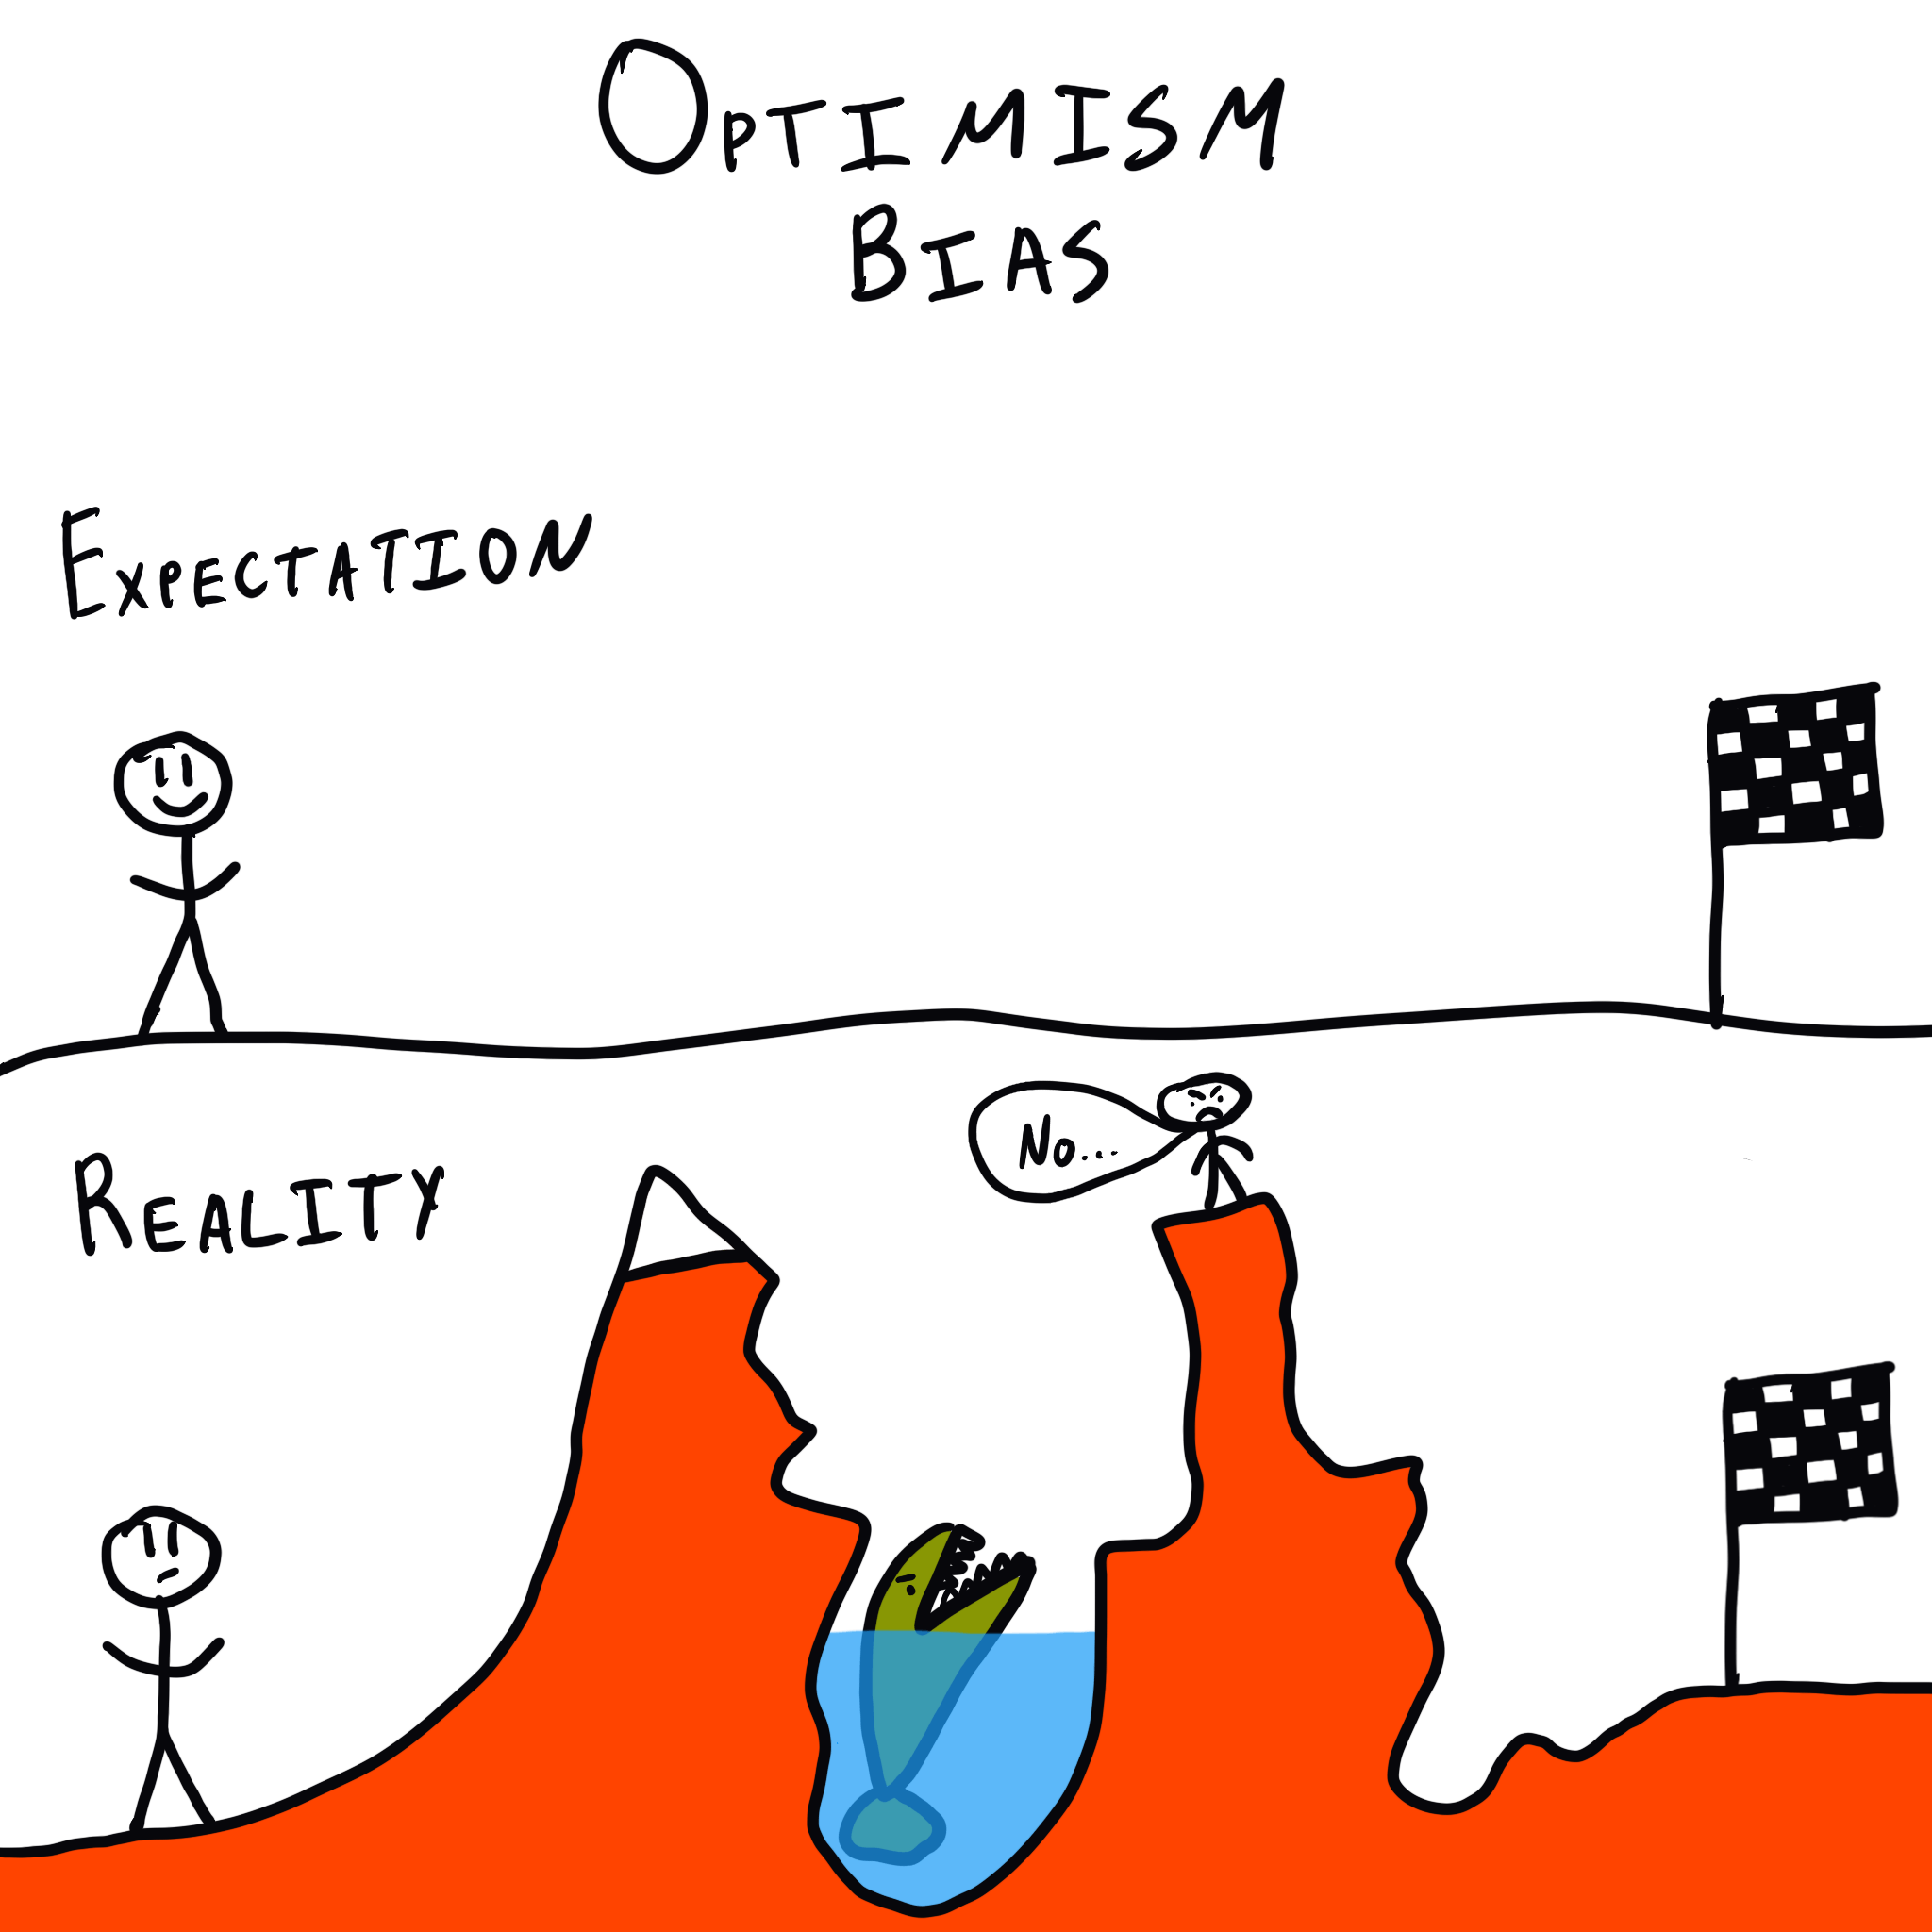 Optimism bias